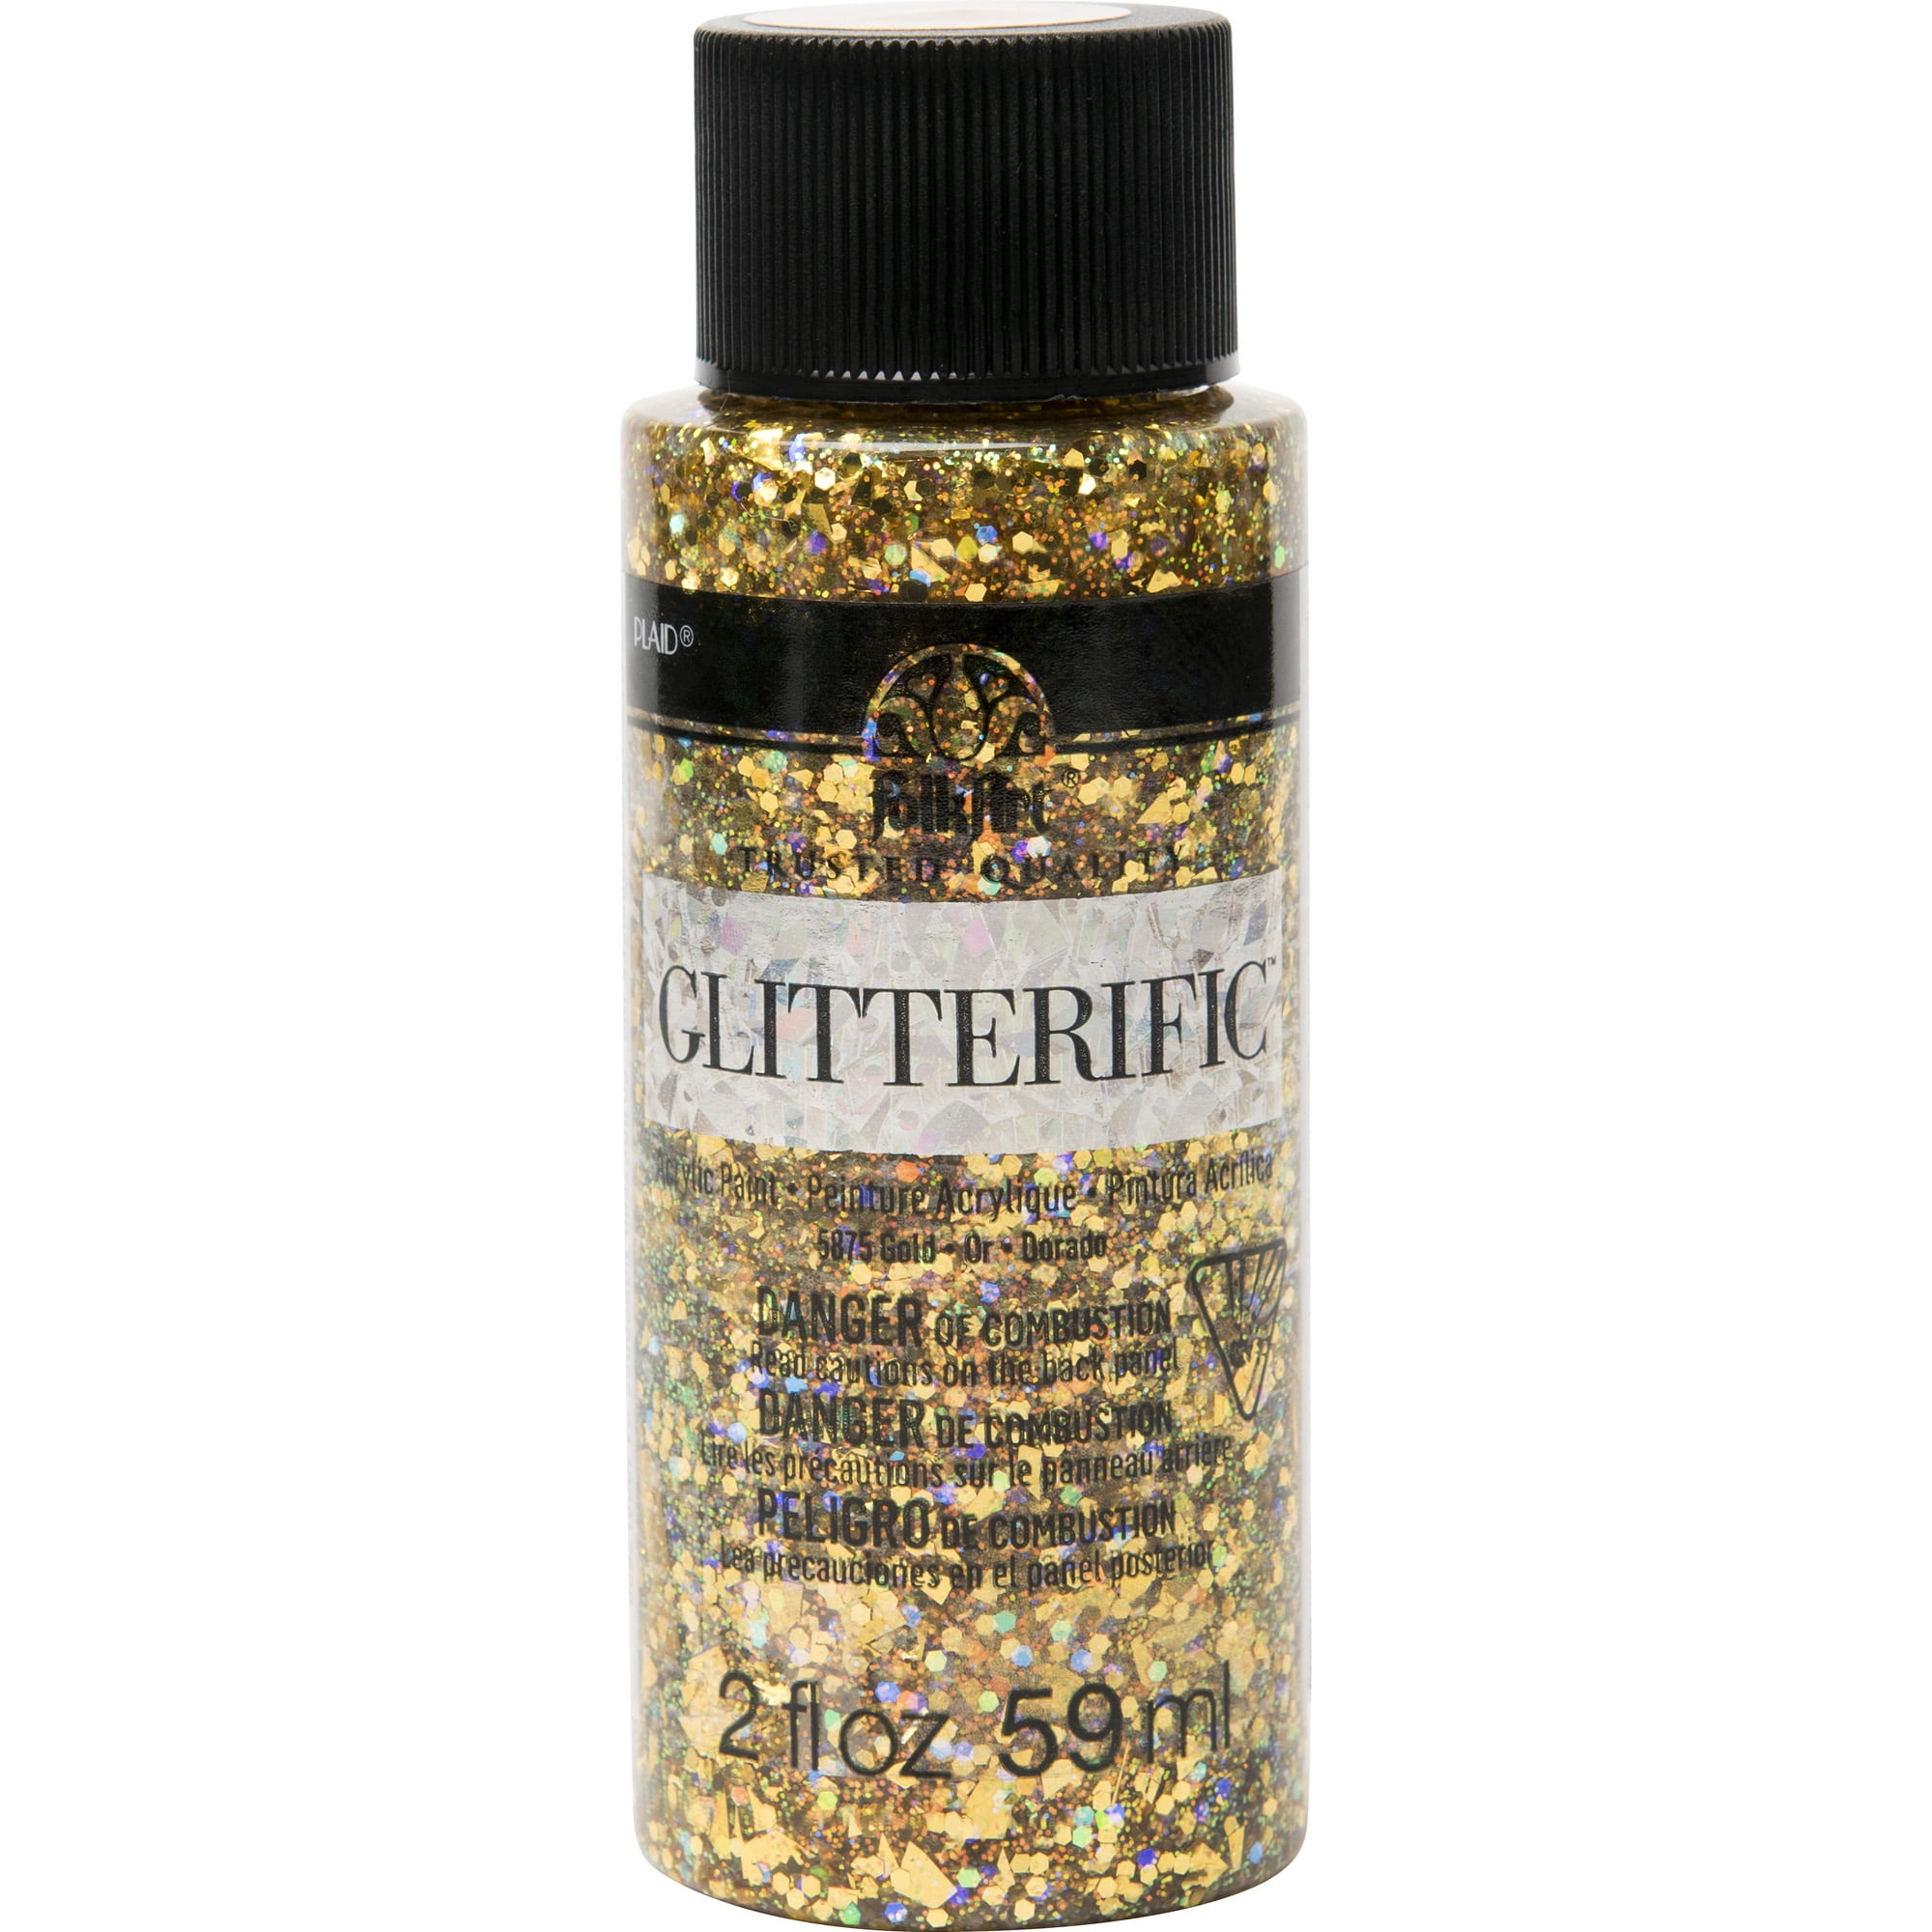 Rose/Gold Color Shift Chameleon Premium Glitter, Multi-Purpose